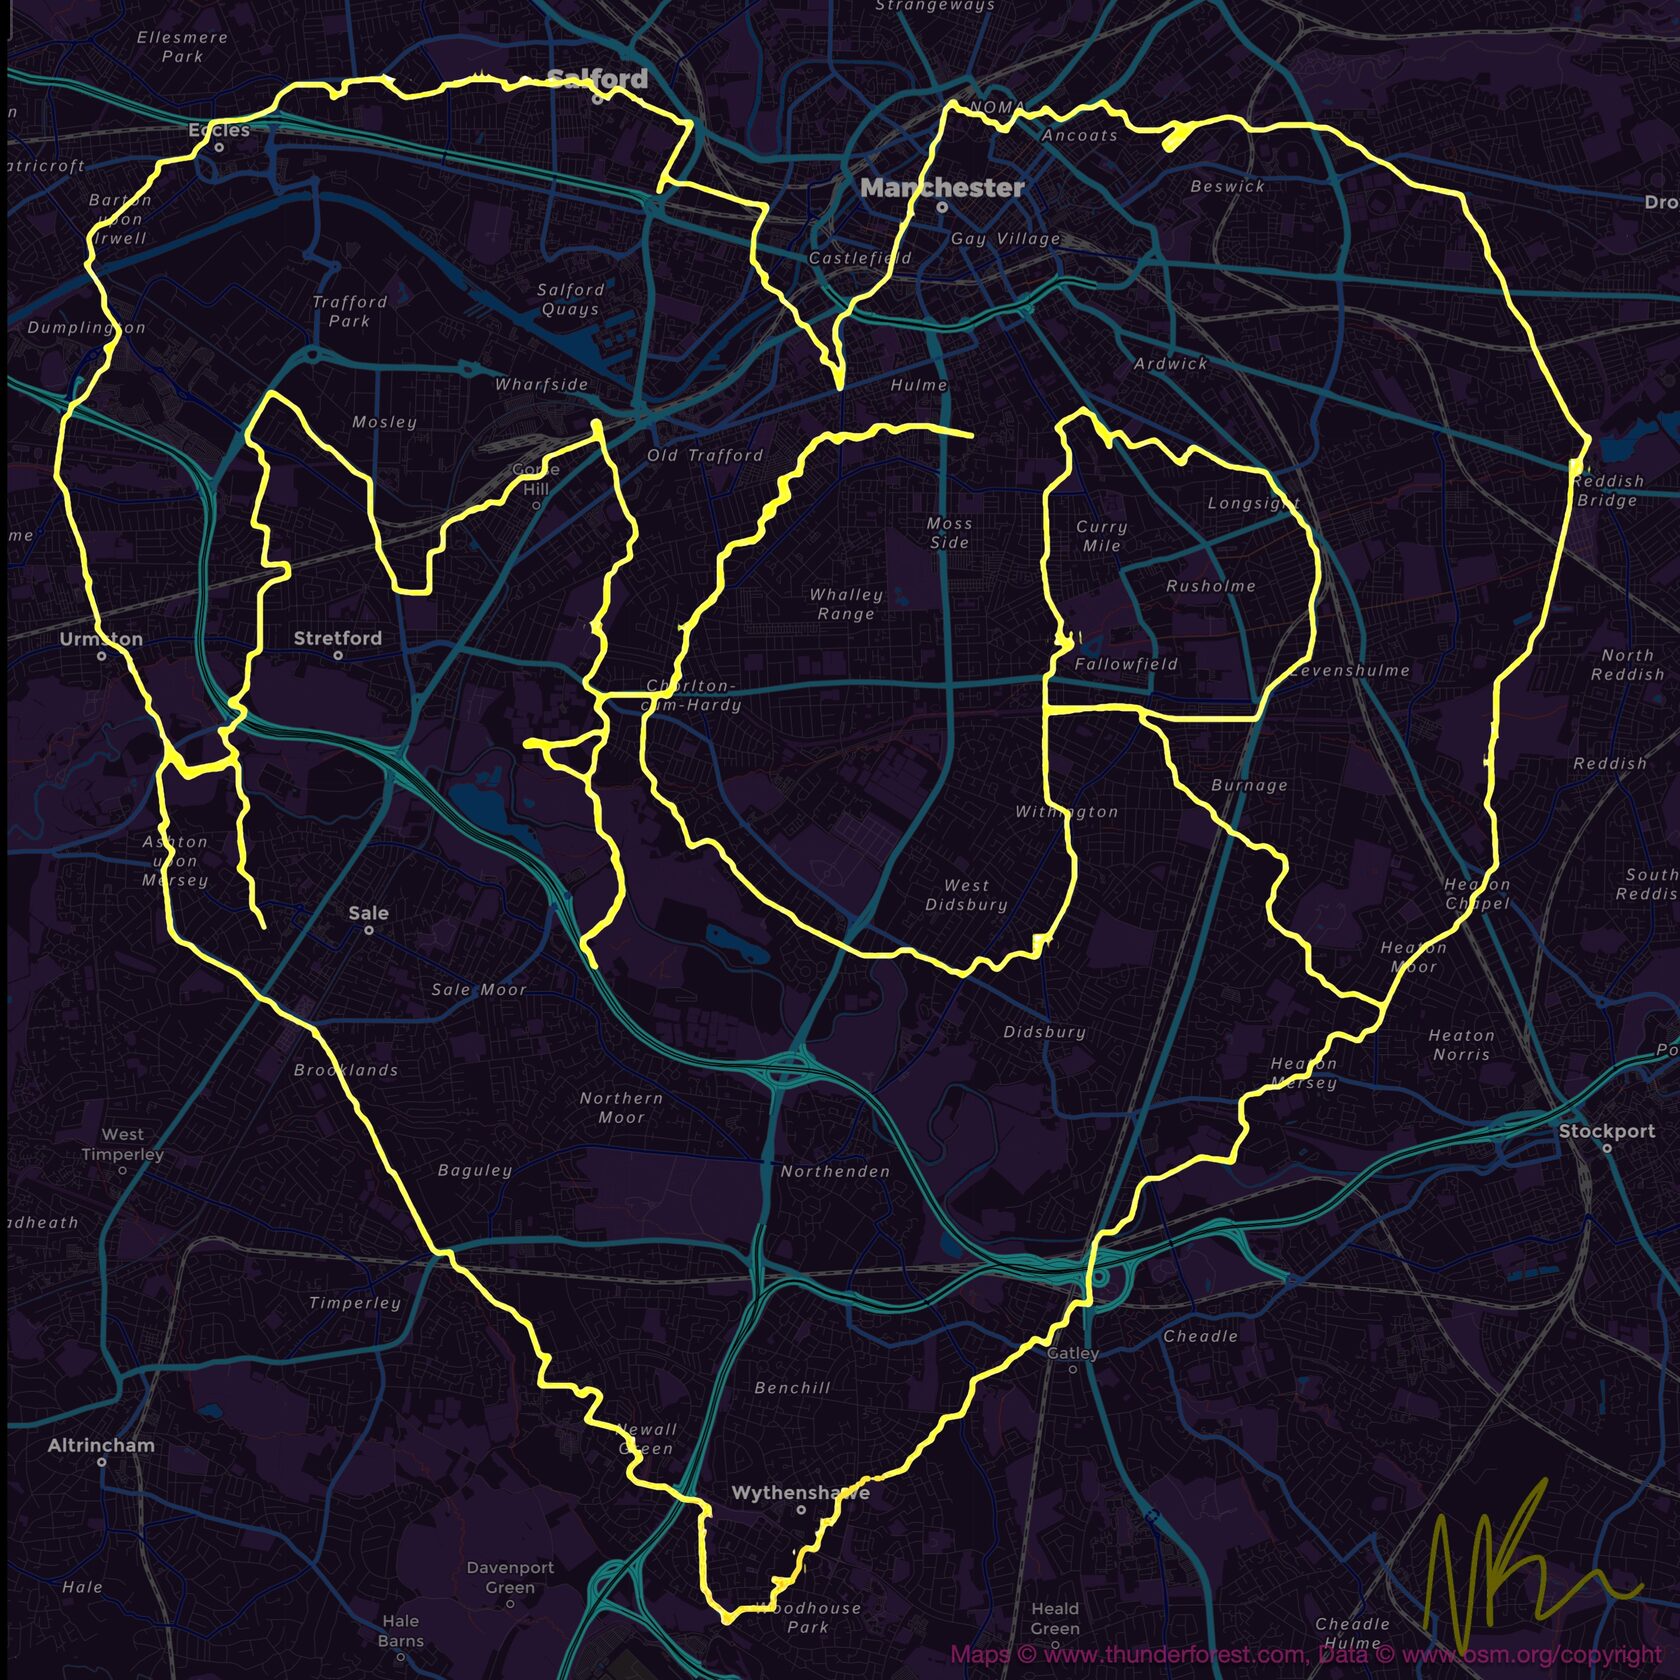 Рисунок GPS, сделанный в память жертв бомбардировки Манчестер Арены